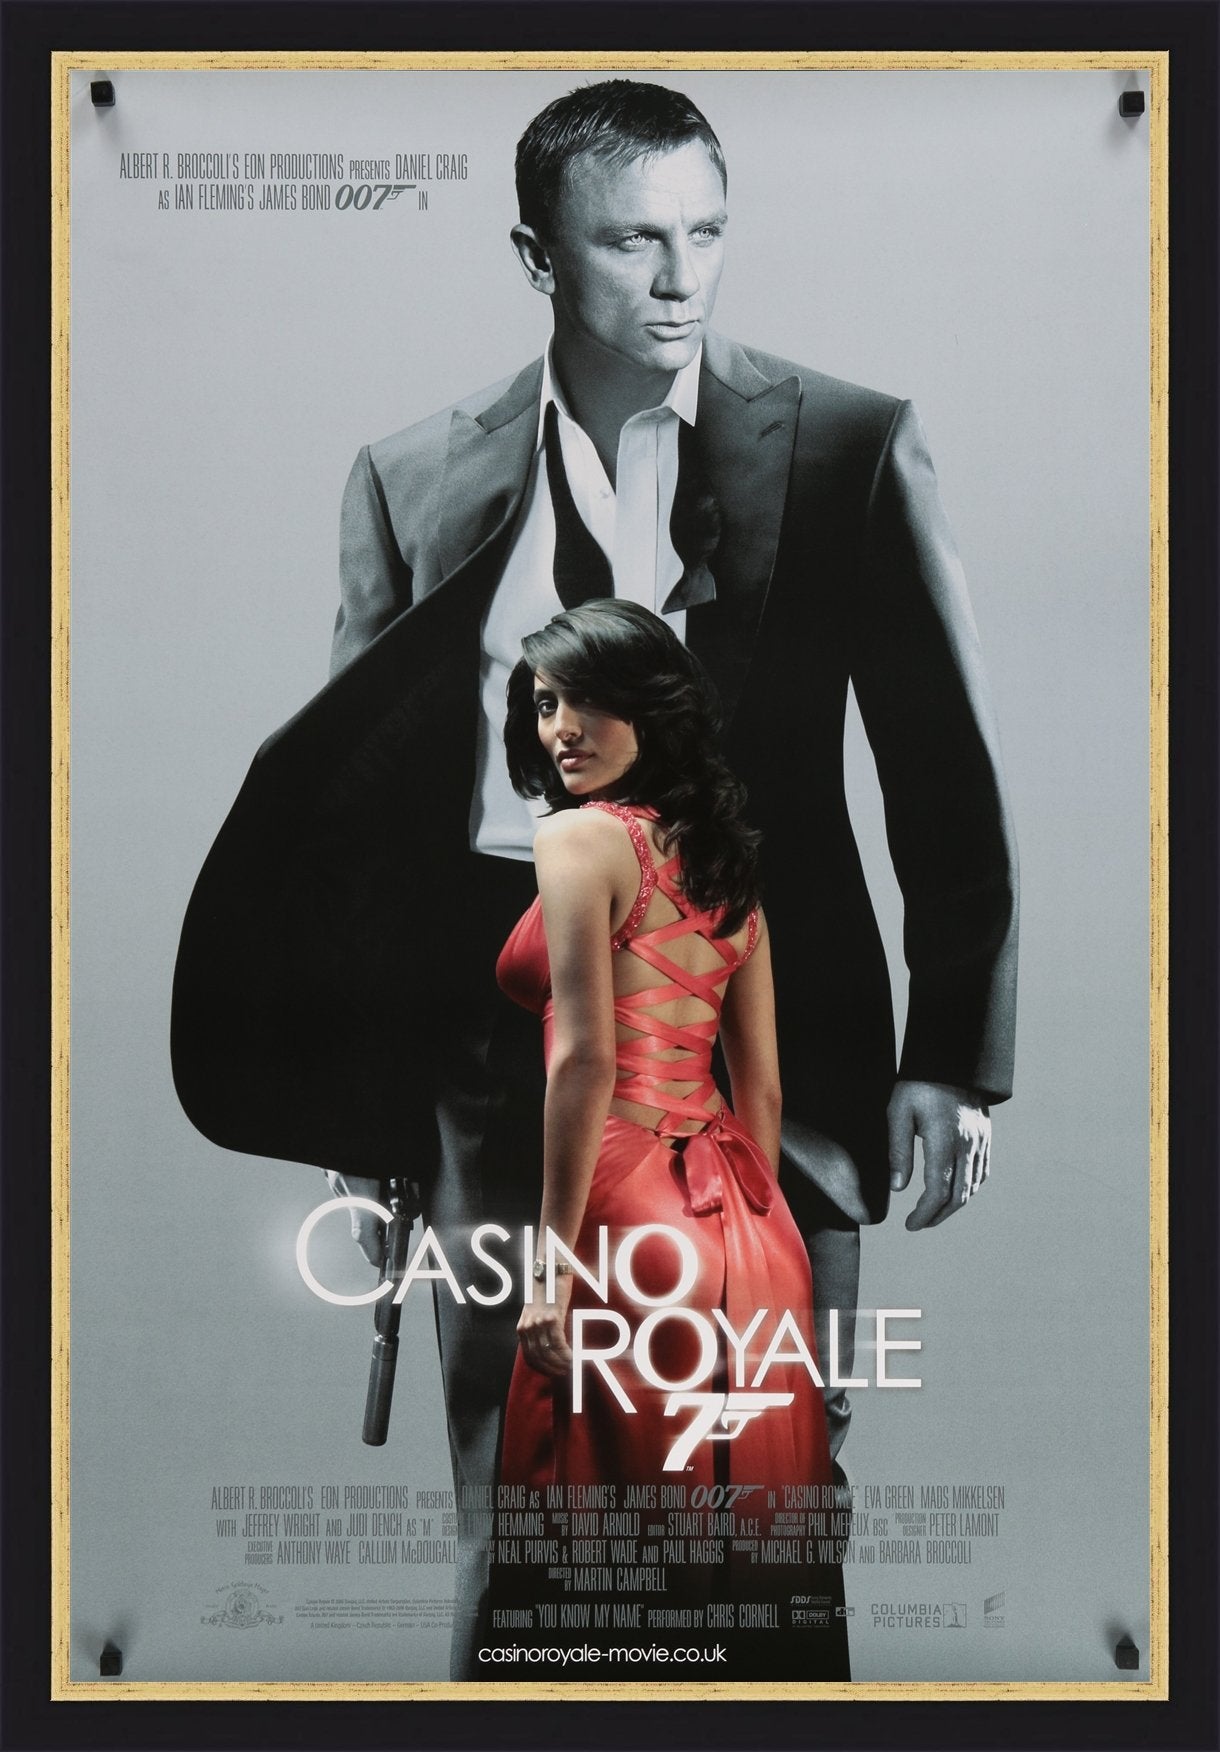 An original movie poster for the James Bond film Casino Royale